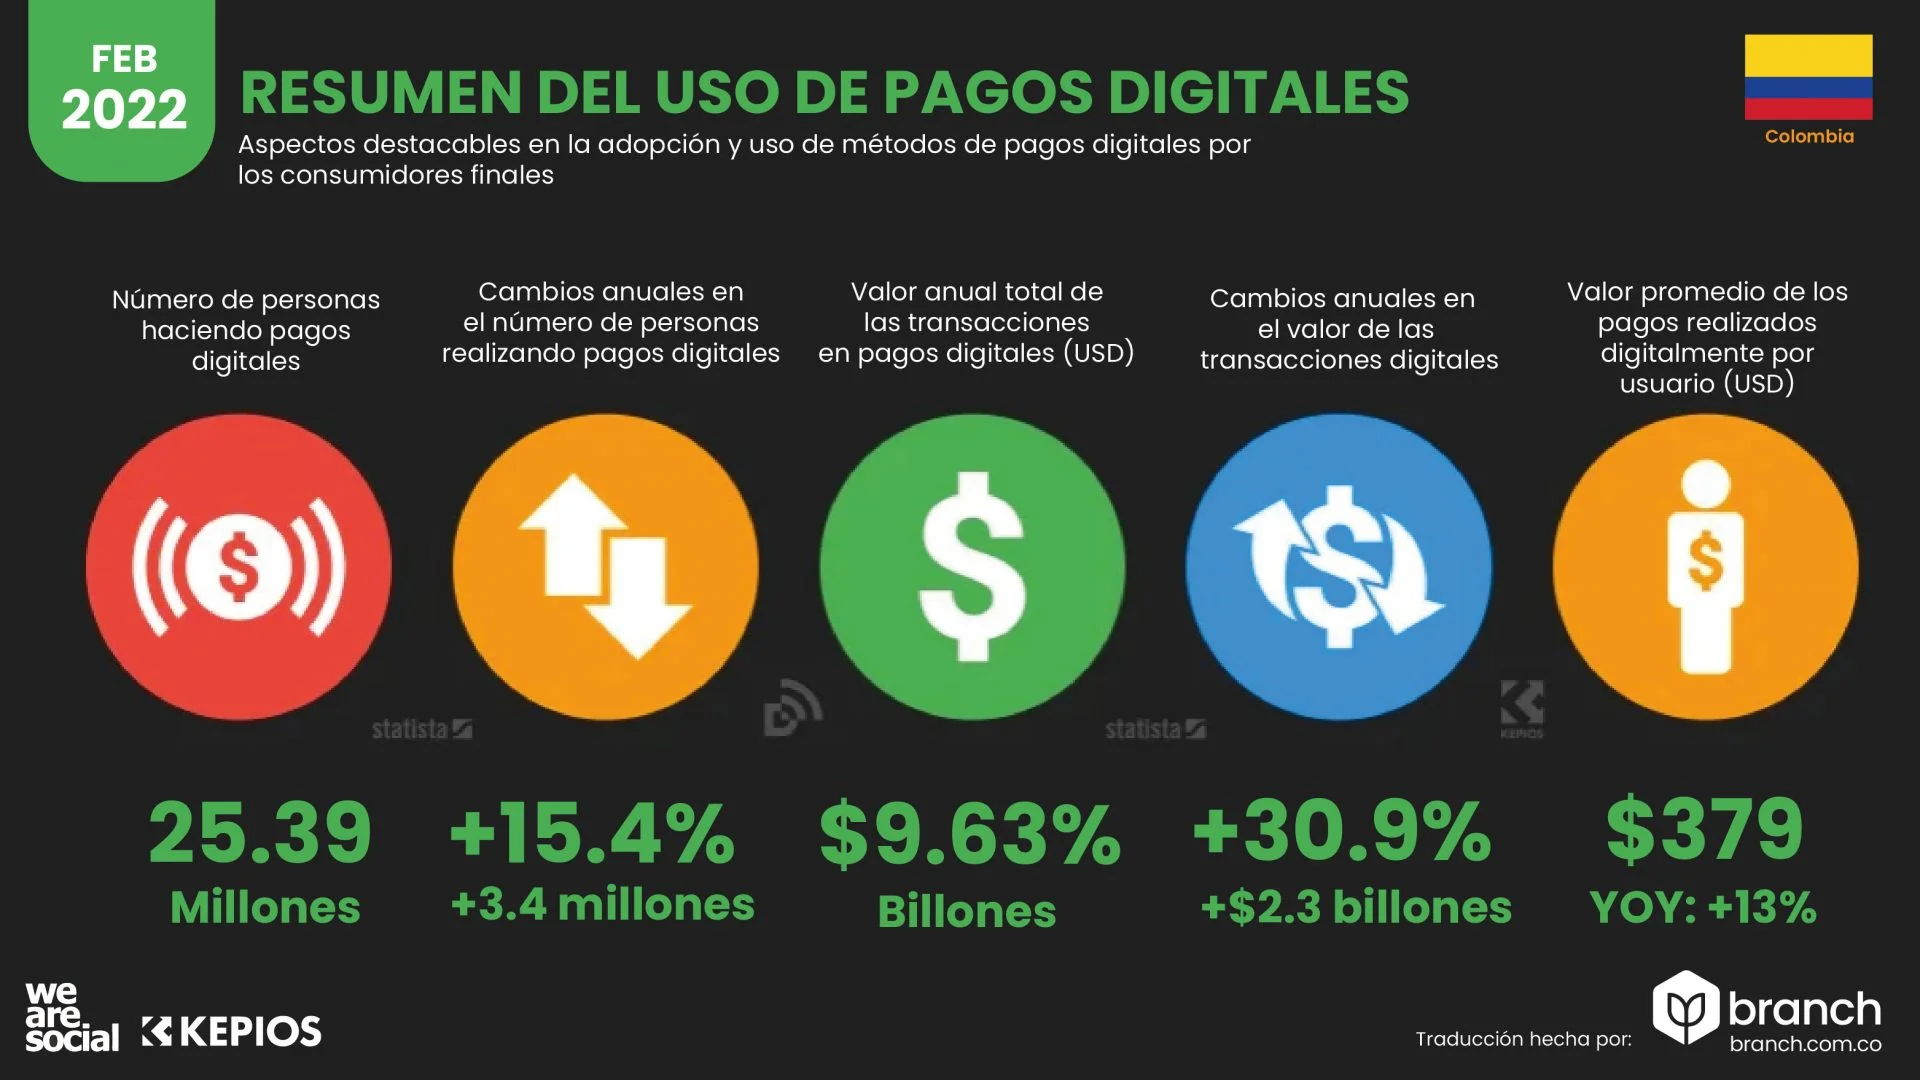 uso de metodos digitales Colombia 2022 -Branch agencia pauta